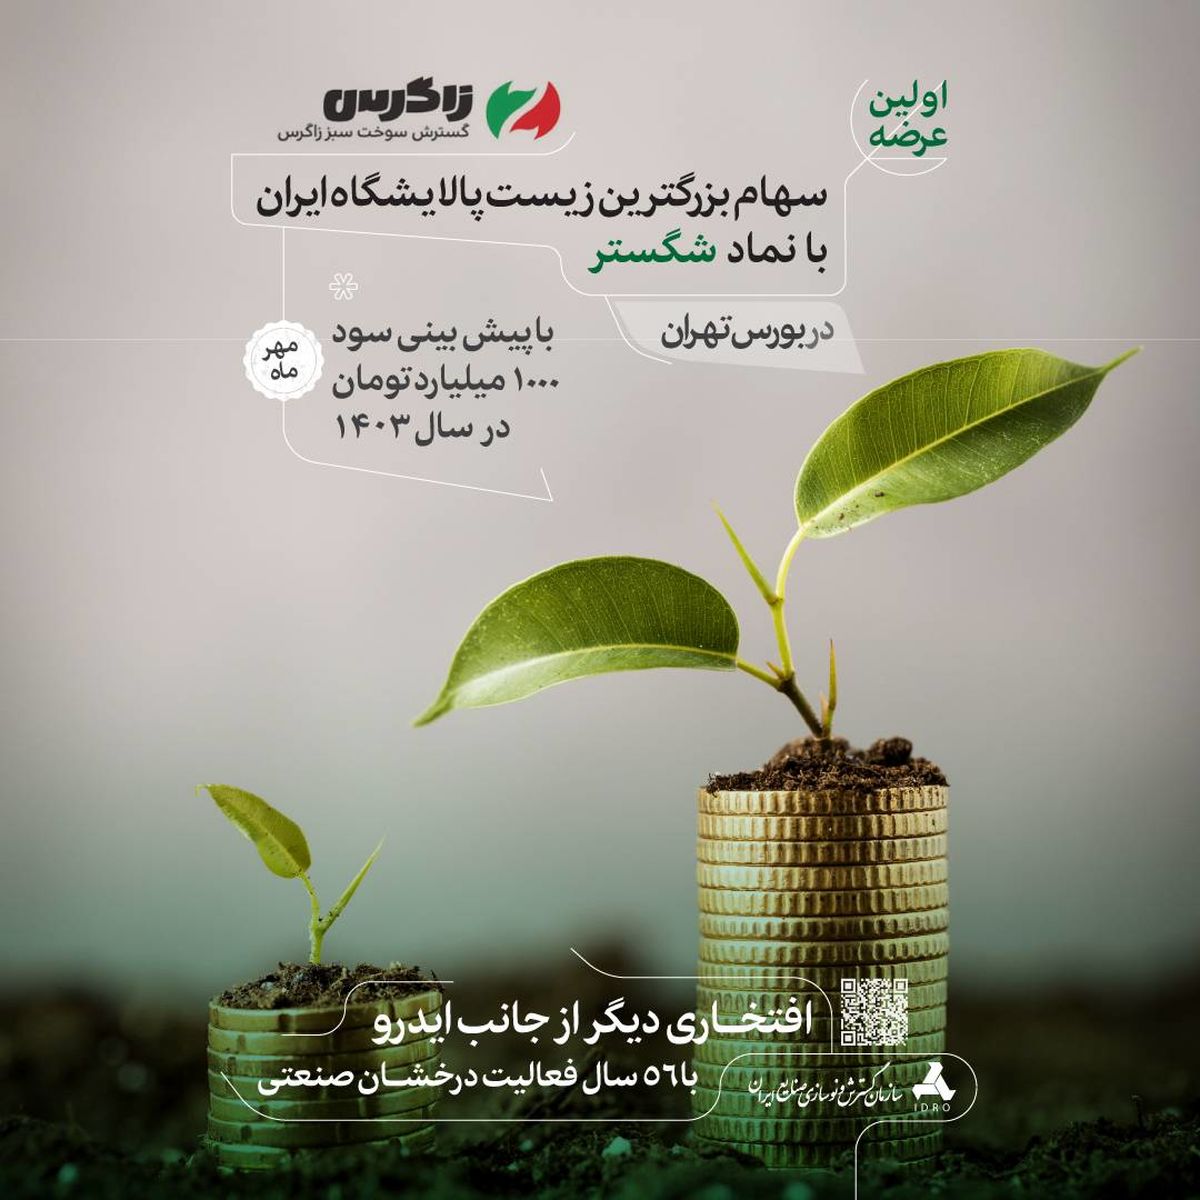 بزرگترین زیست پالایشگاه ایران به بازار سرمایه می آید/هزینه‌های پالایشگاه‌های تولید بنزین نیز کاهش می یابد